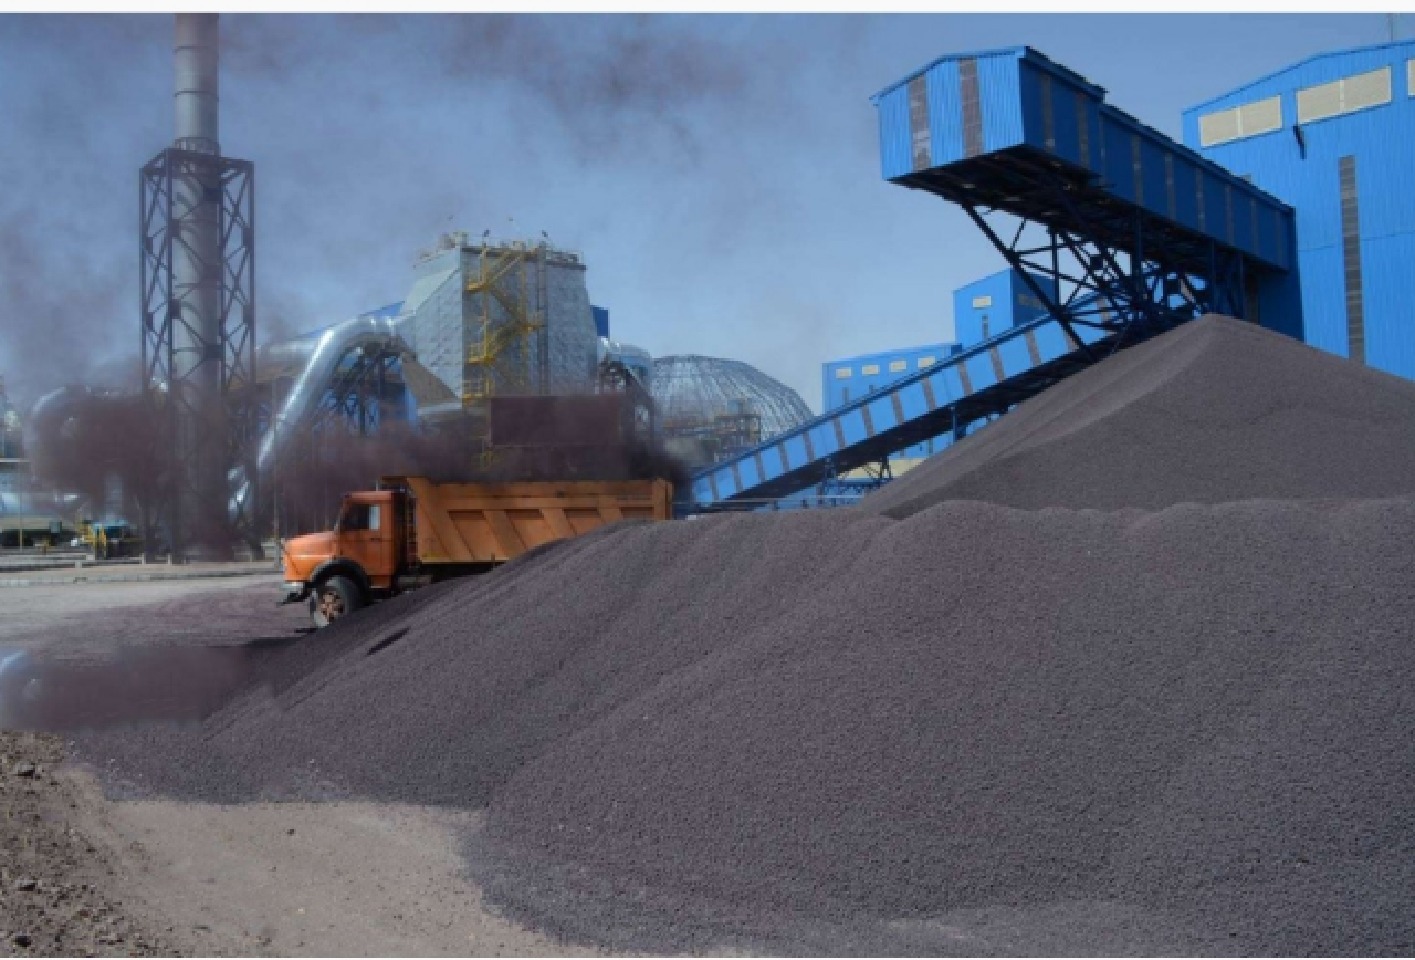 تولید کنسانتره آهن شرکت های بزرگ به مرز ۵۰ میلیون تن رسید